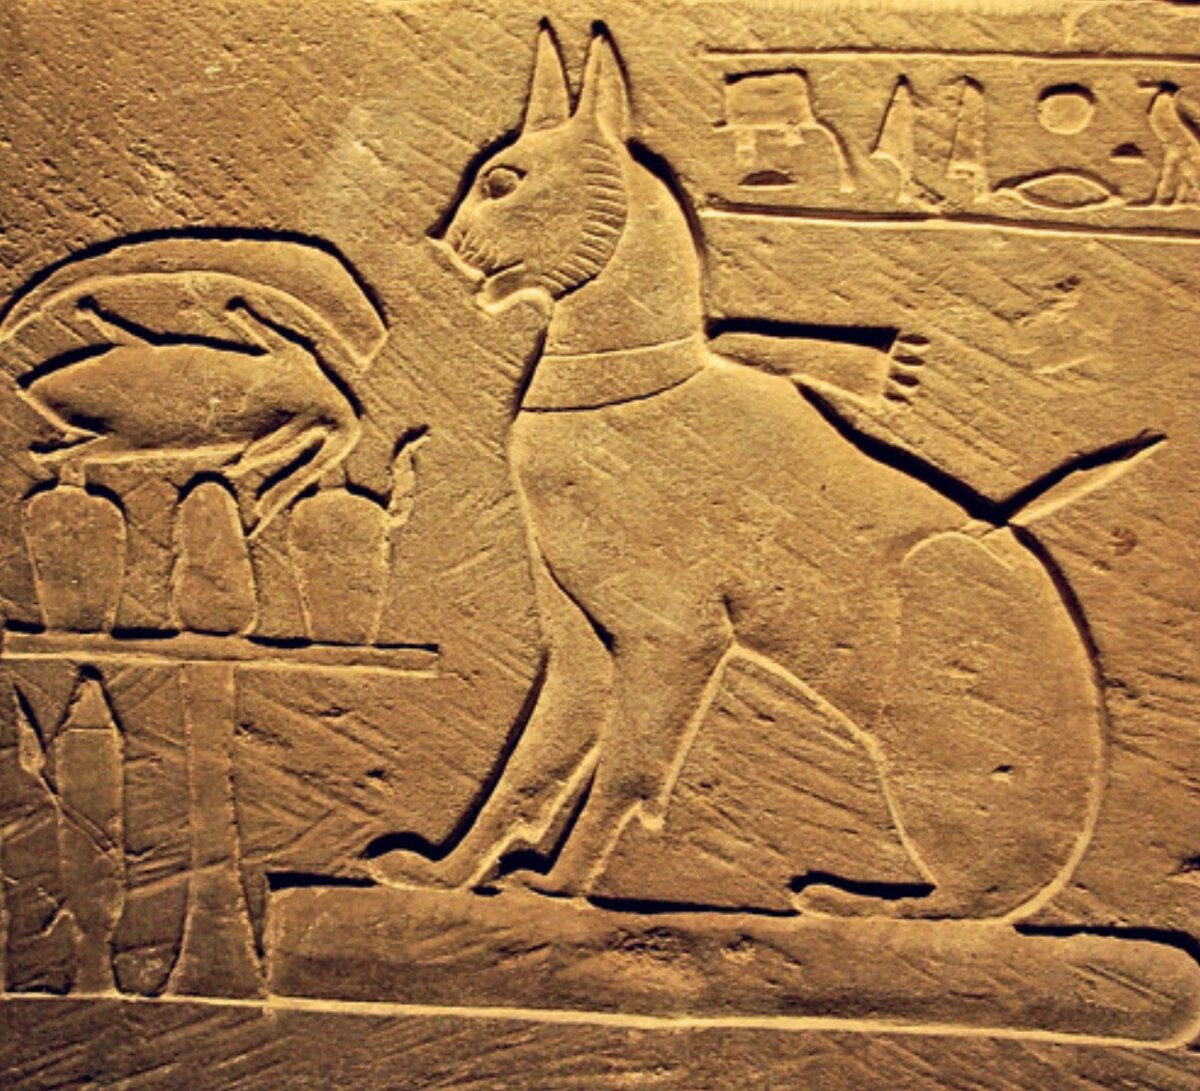 Кошка была приручена в древнем. Древний Египет Бастет фрески. Фрески древнего Египта Баст. Египетские фрески с кошками. Изображение кошек в древнем Египте.